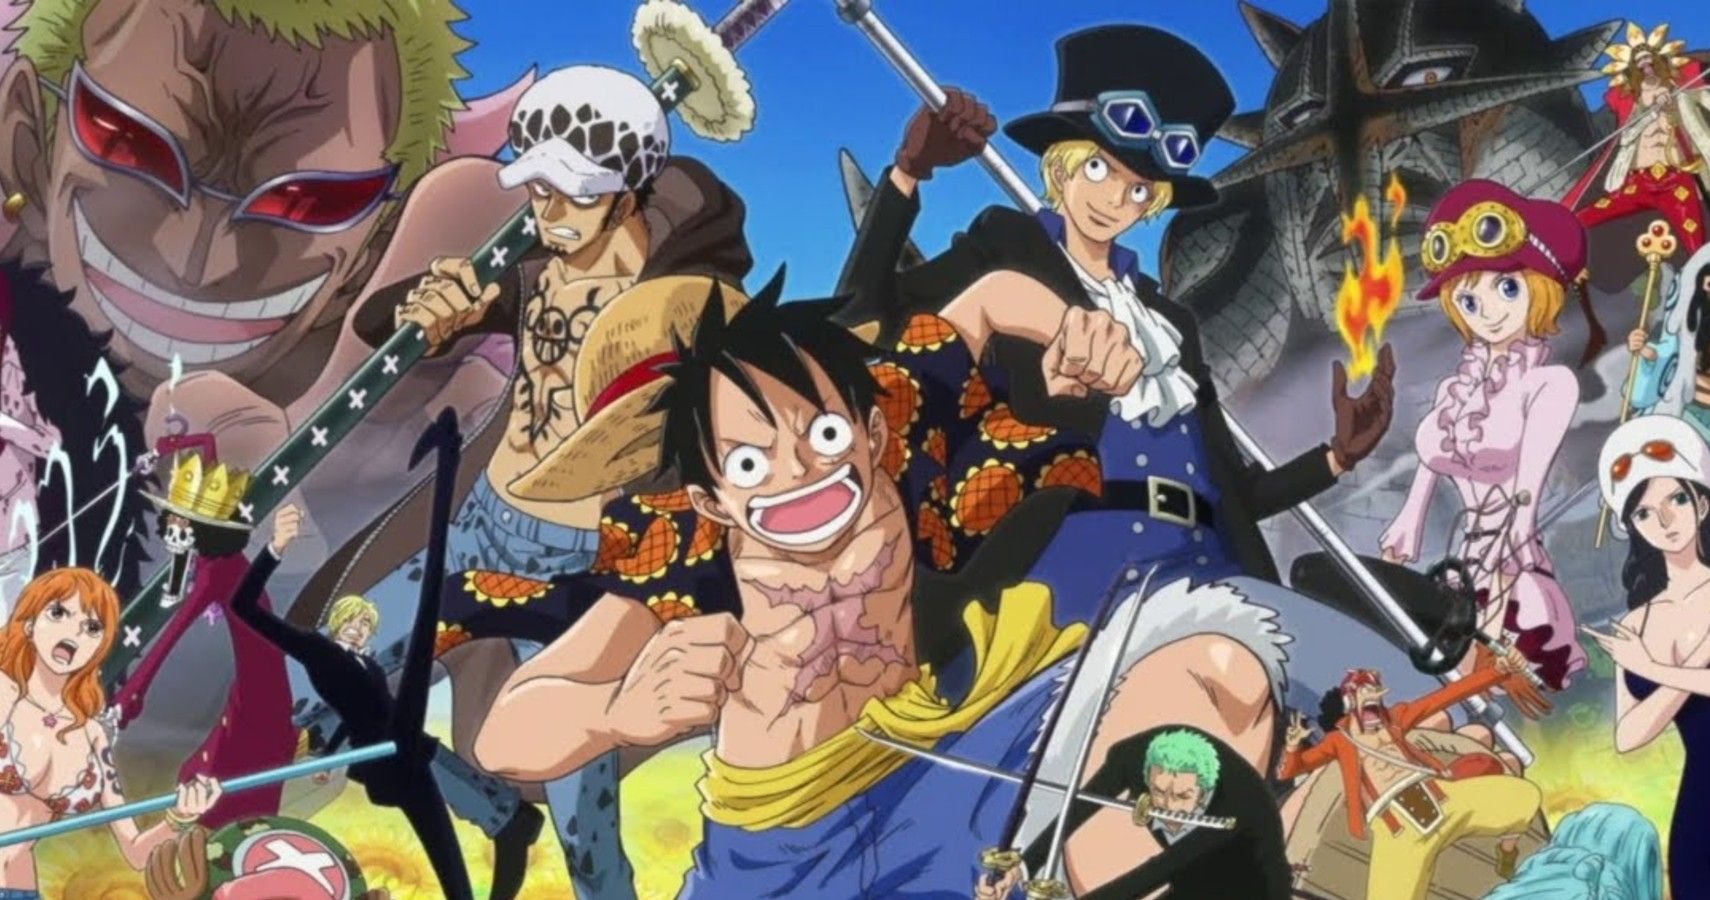 O Guia Definitivo de todas as sagas do anime de One Piece (até agora) -  Crunchyroll Notícias